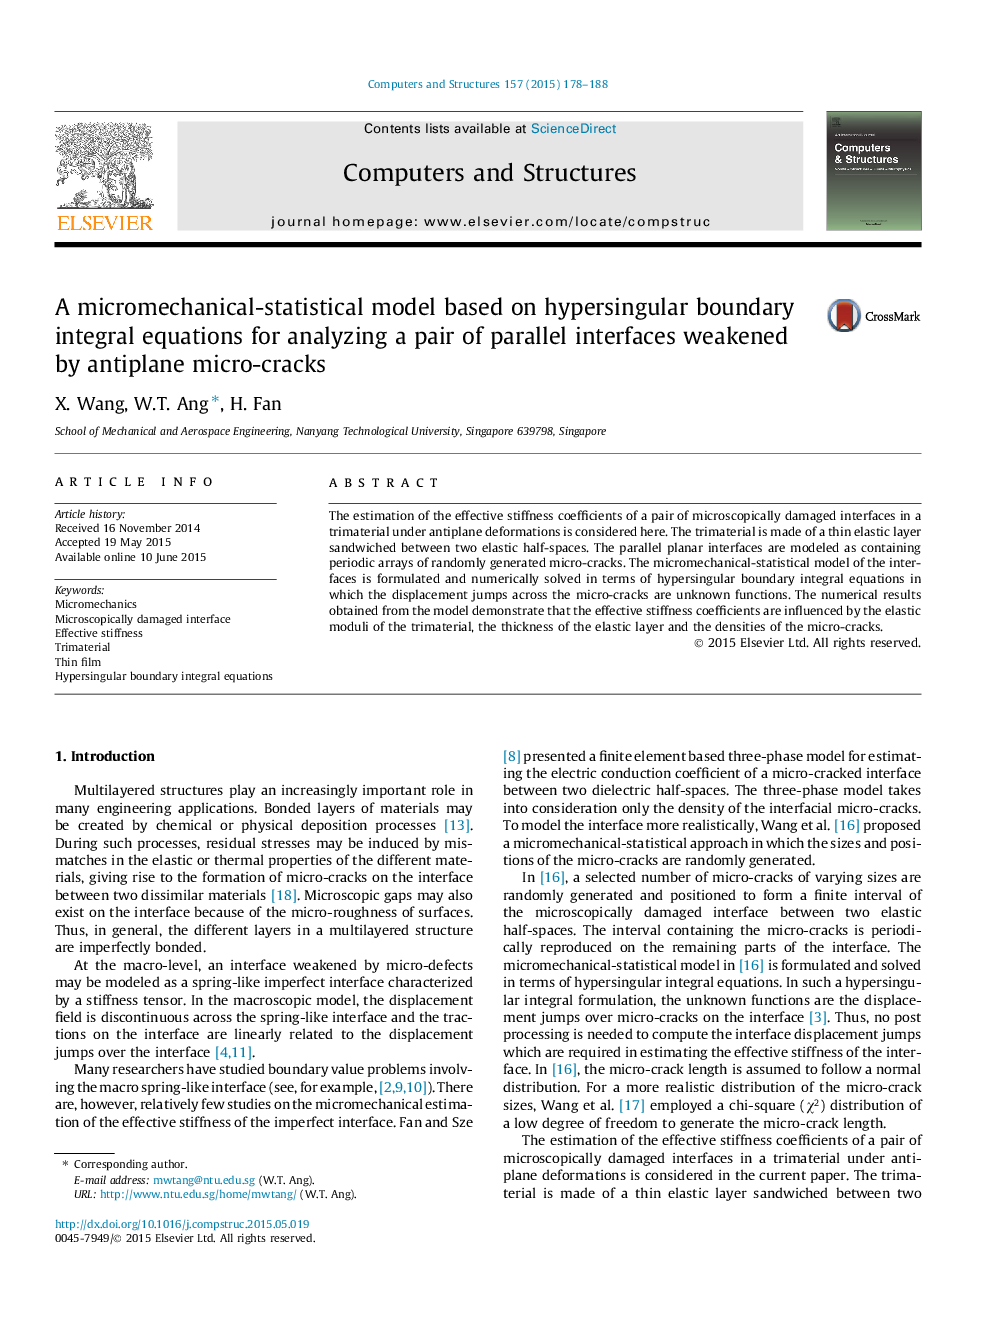 یک مدل آماری میکرومکانیکی مبتنی بر معادلات انتگرال مرزی ابررسانگول برای تجزیه و تحلیل یک جفت رابط موازی ضعیف شده توسط میکرو ترک های ضد فلک 